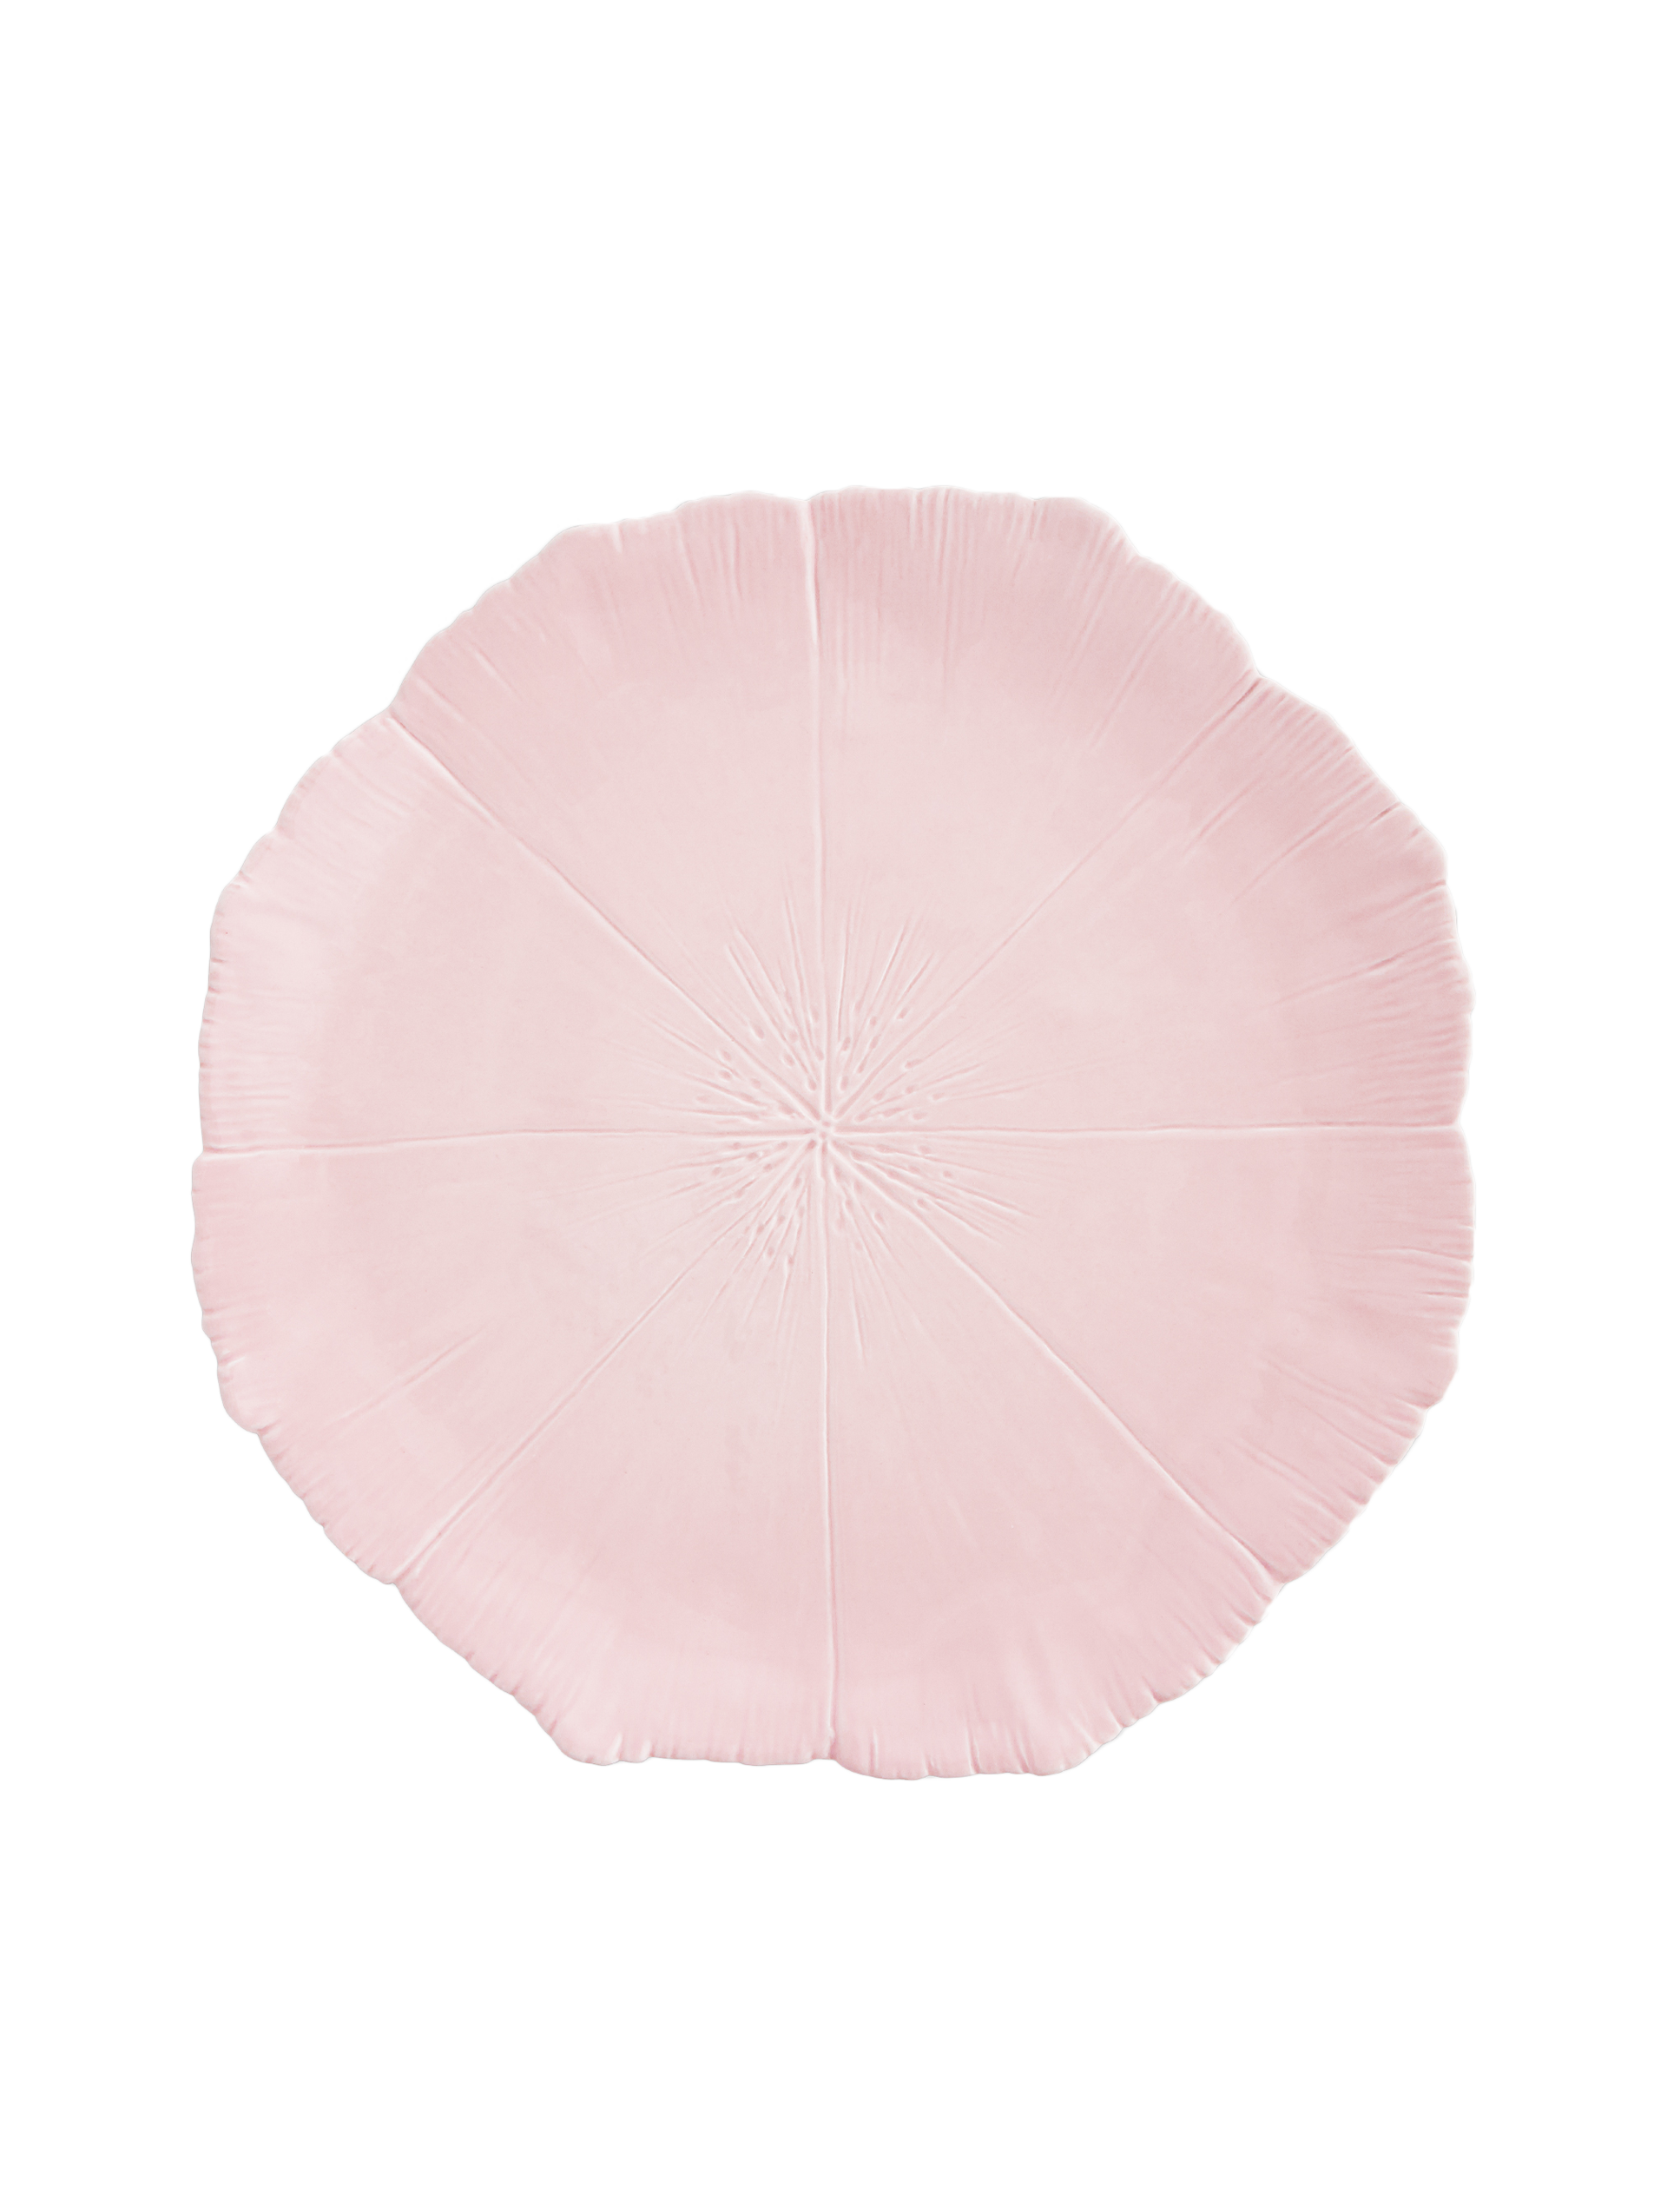 Prato Sobremesa Blossom Rosa